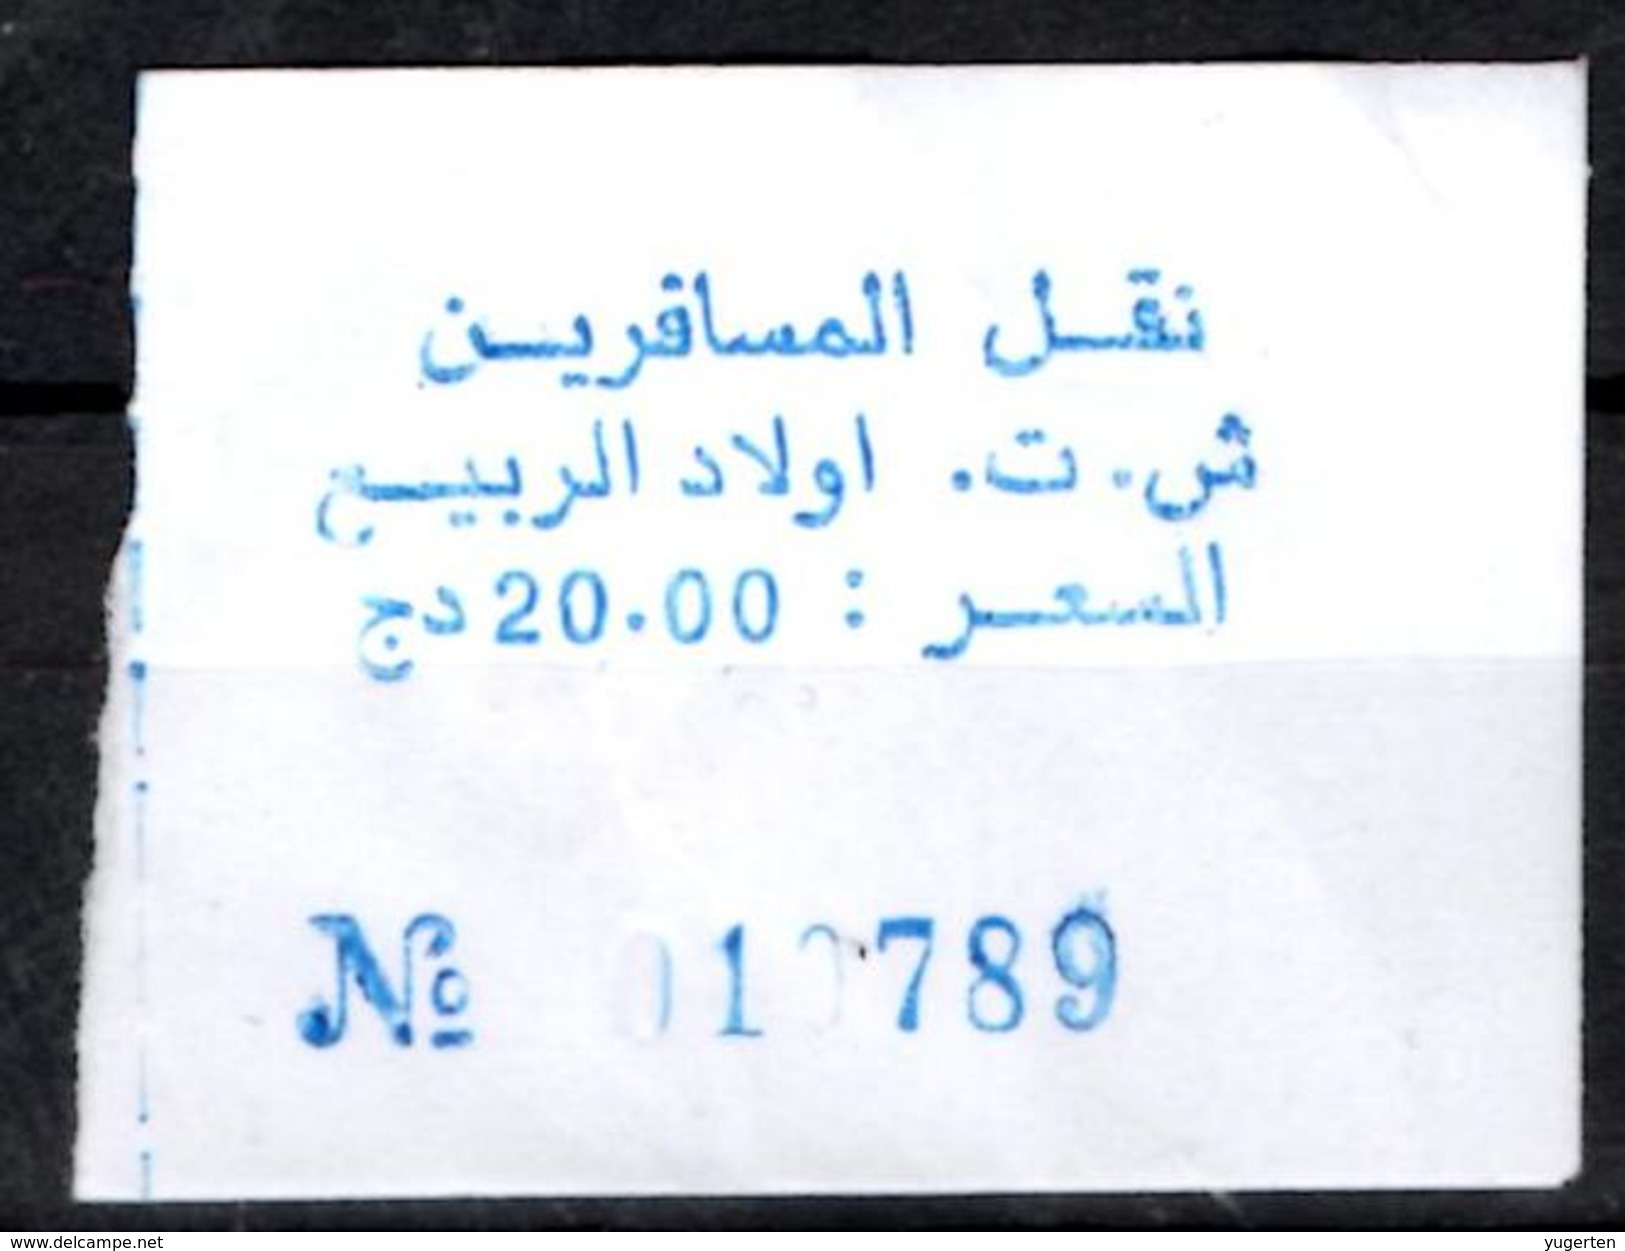 Algeria Ticket Bus Transport Urbain - Annaba Trajet Ouled Errabii Billete De Autobús Biglietto Dell'autobus - Mondo